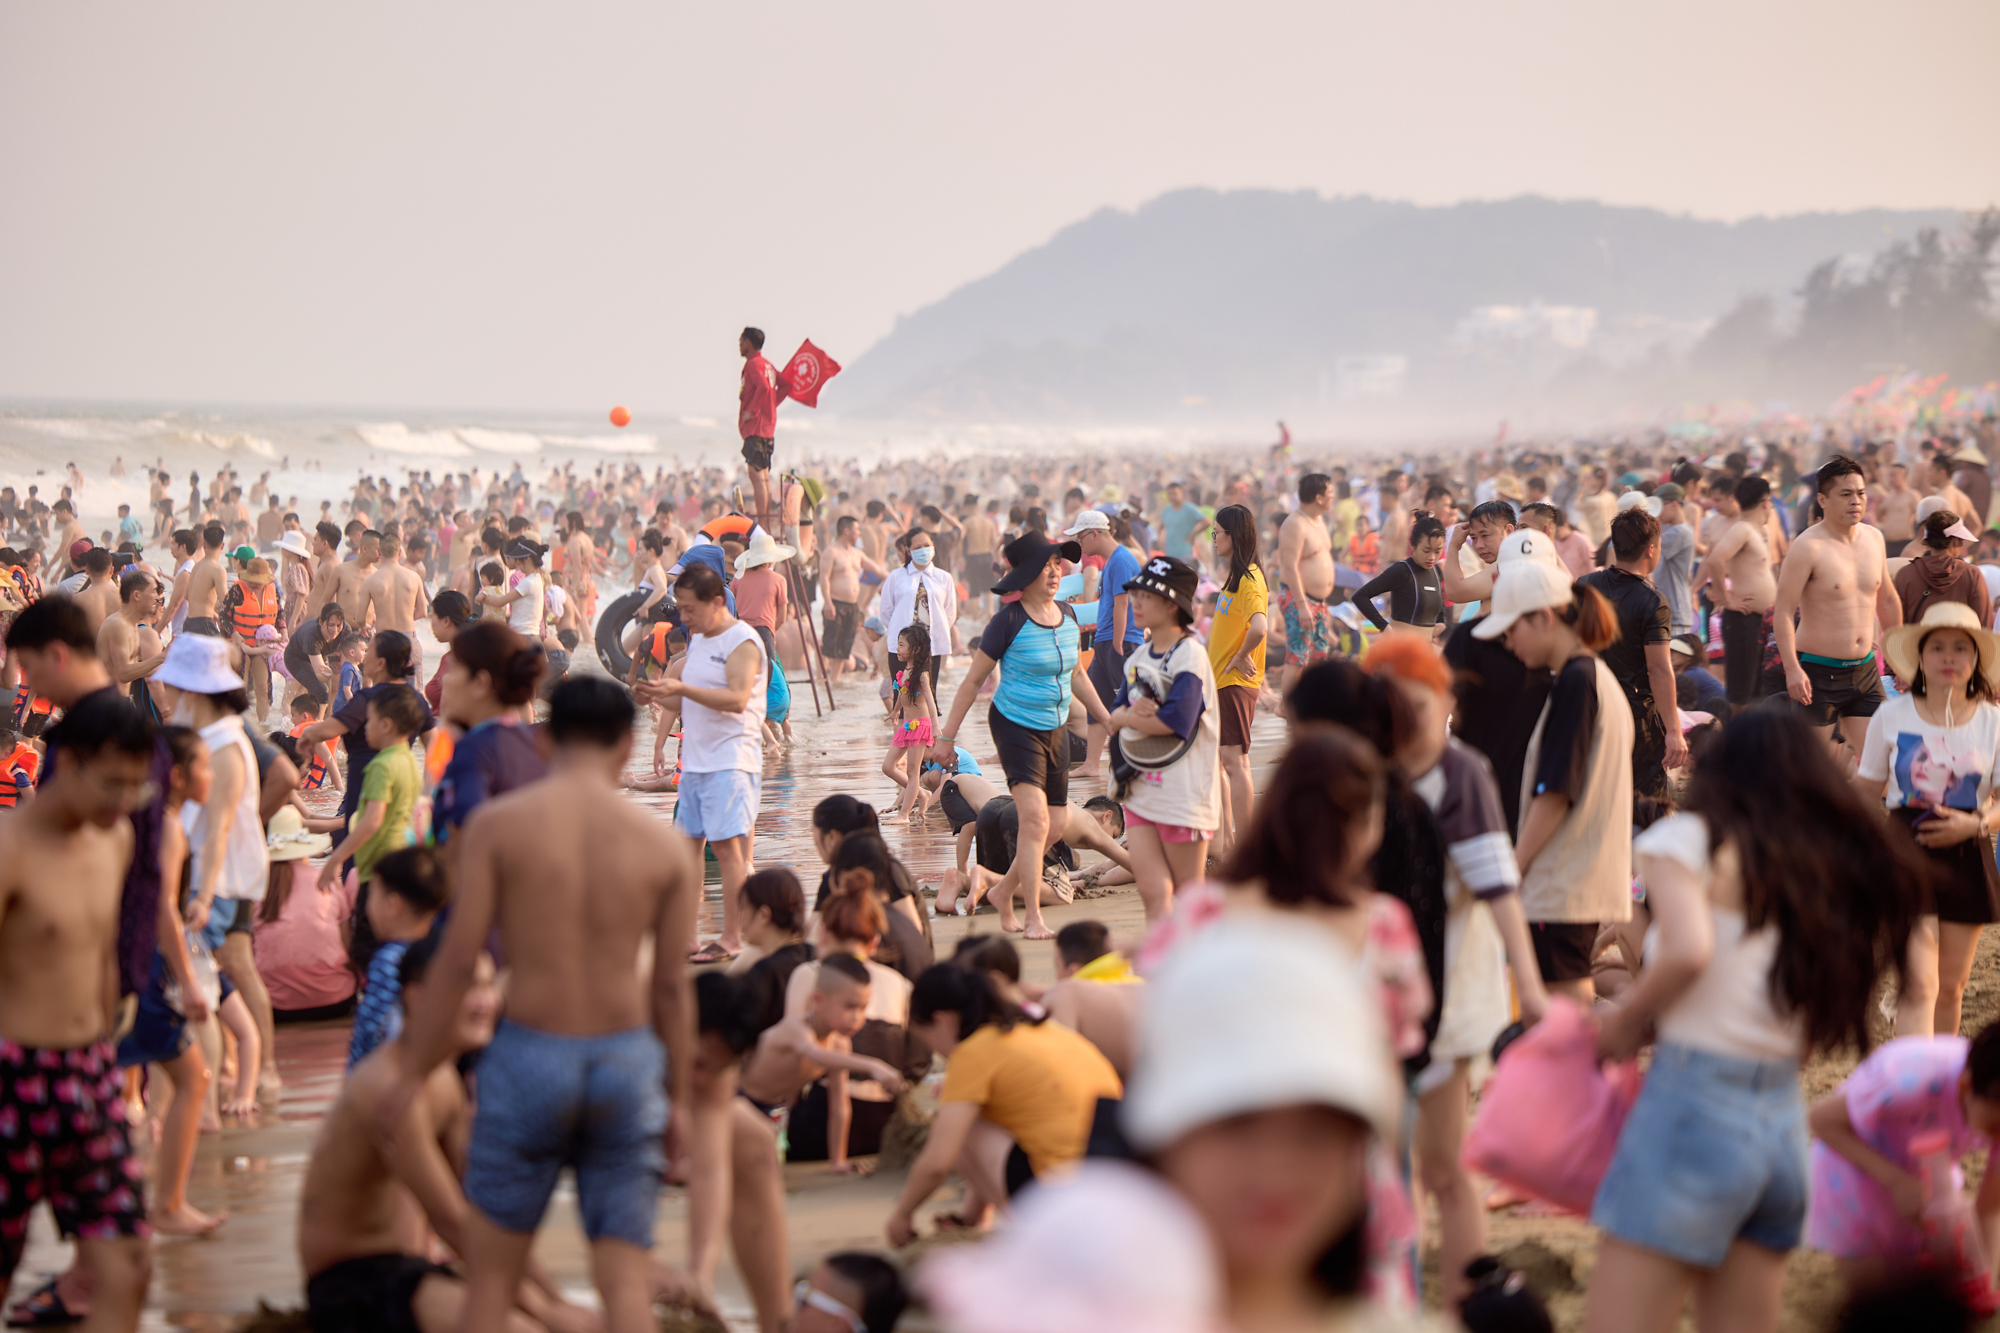 Bãi biển Sầm Sơn ken đặc người đổ về giải nhiệt, du khách nói 3 lý do quyết lựa chọn nơi này- Ảnh 3.